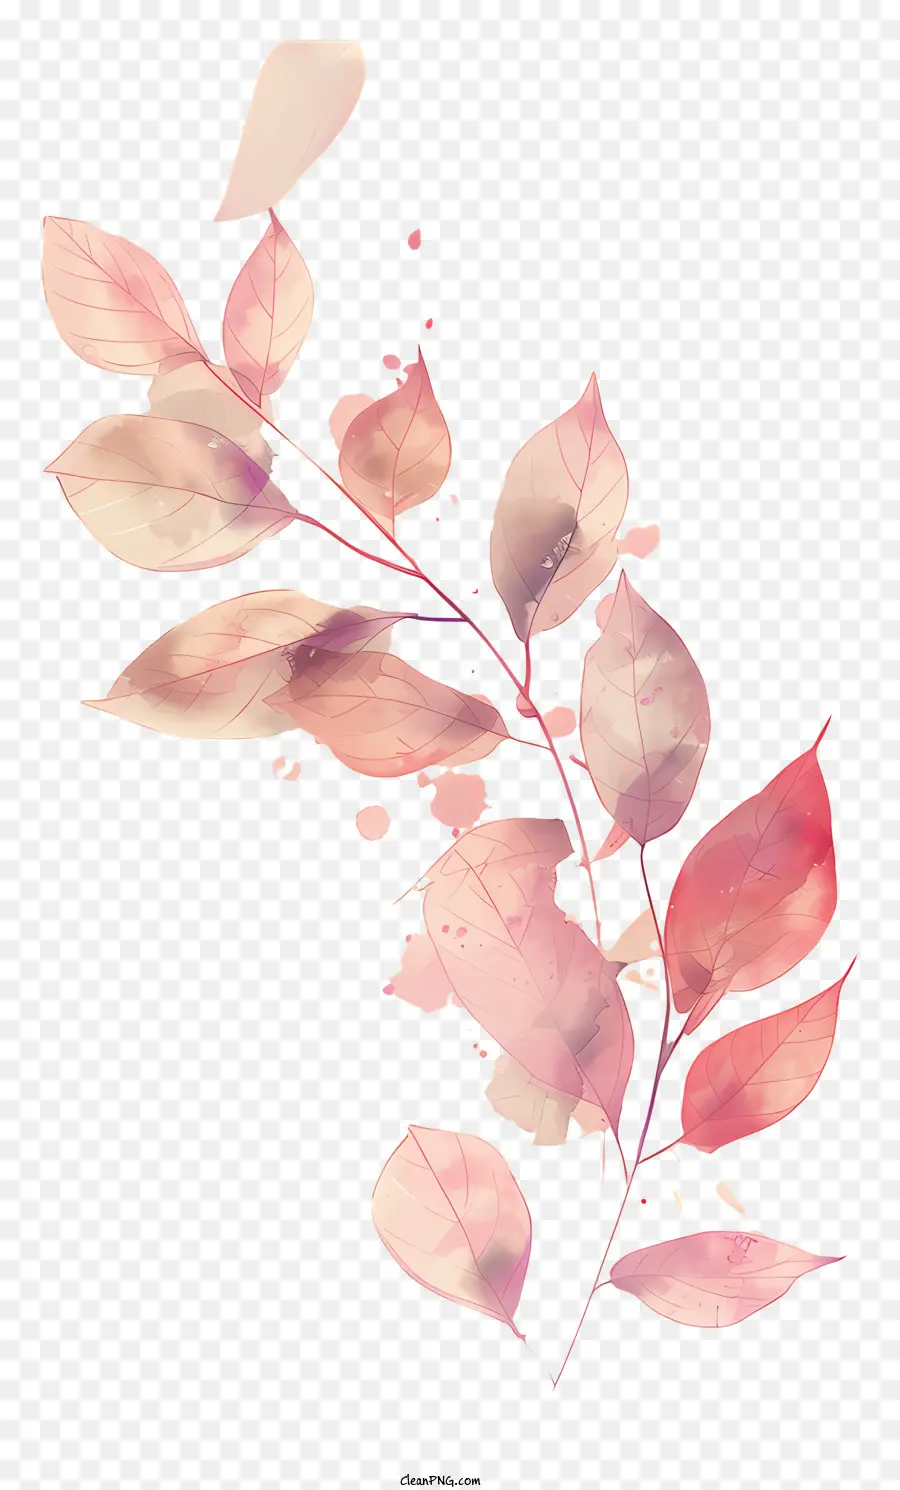 Herbst Blätter - Aquarellblätter in rosa und rot